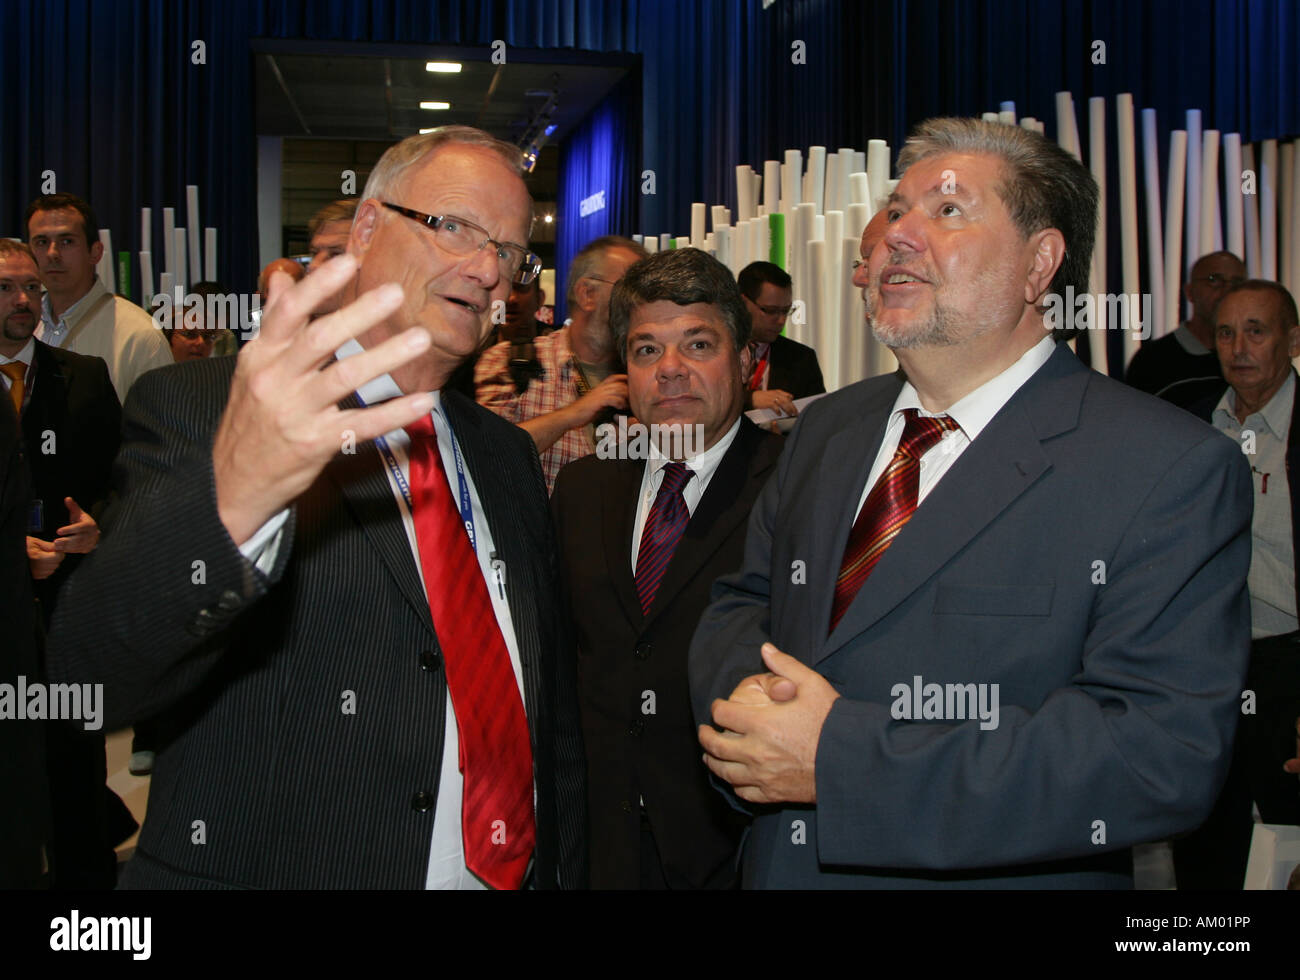 Premier ministre de Rhénanie-palatinat Kurt Beck au cours de l'IFA avec le Grundig-Chairman Hans-Peter Haase à Berlin, Allemagne Banque D'Images